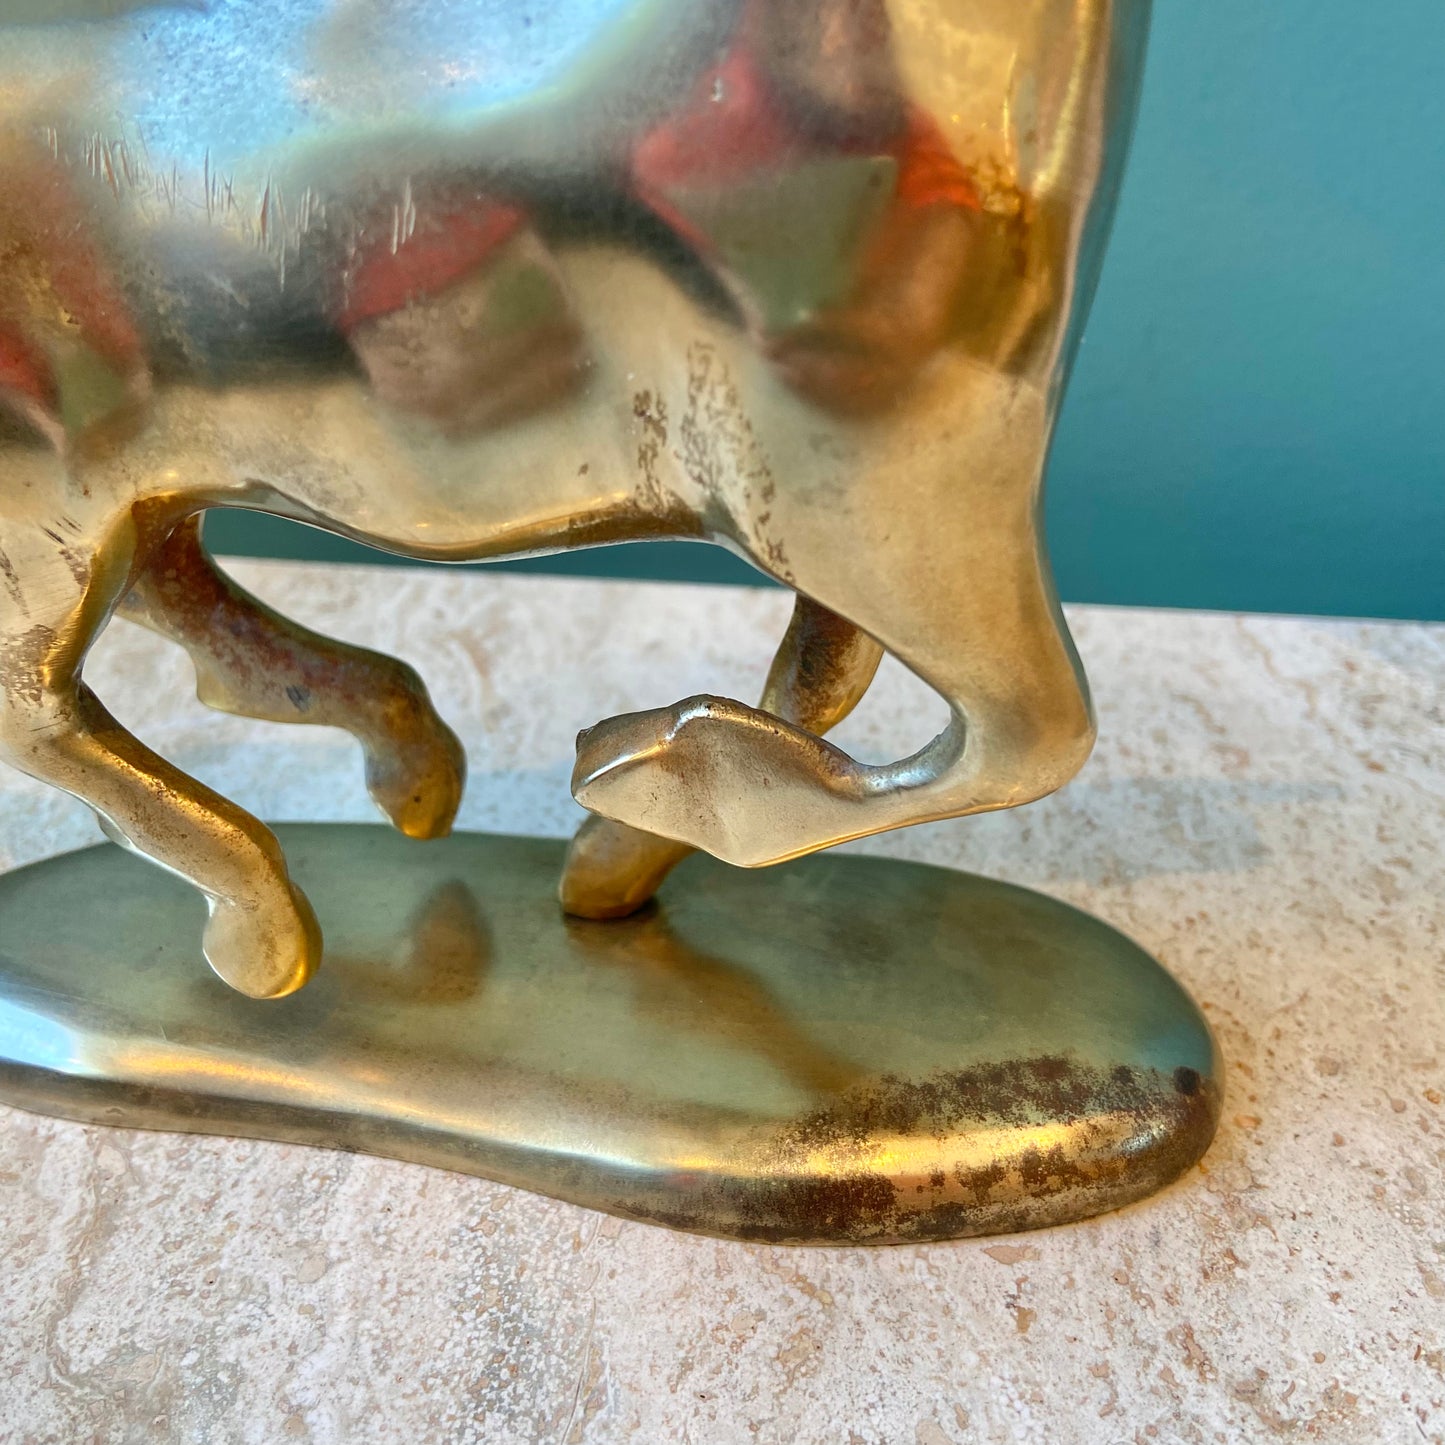 Vintage Brass Running Unicorn Figurine